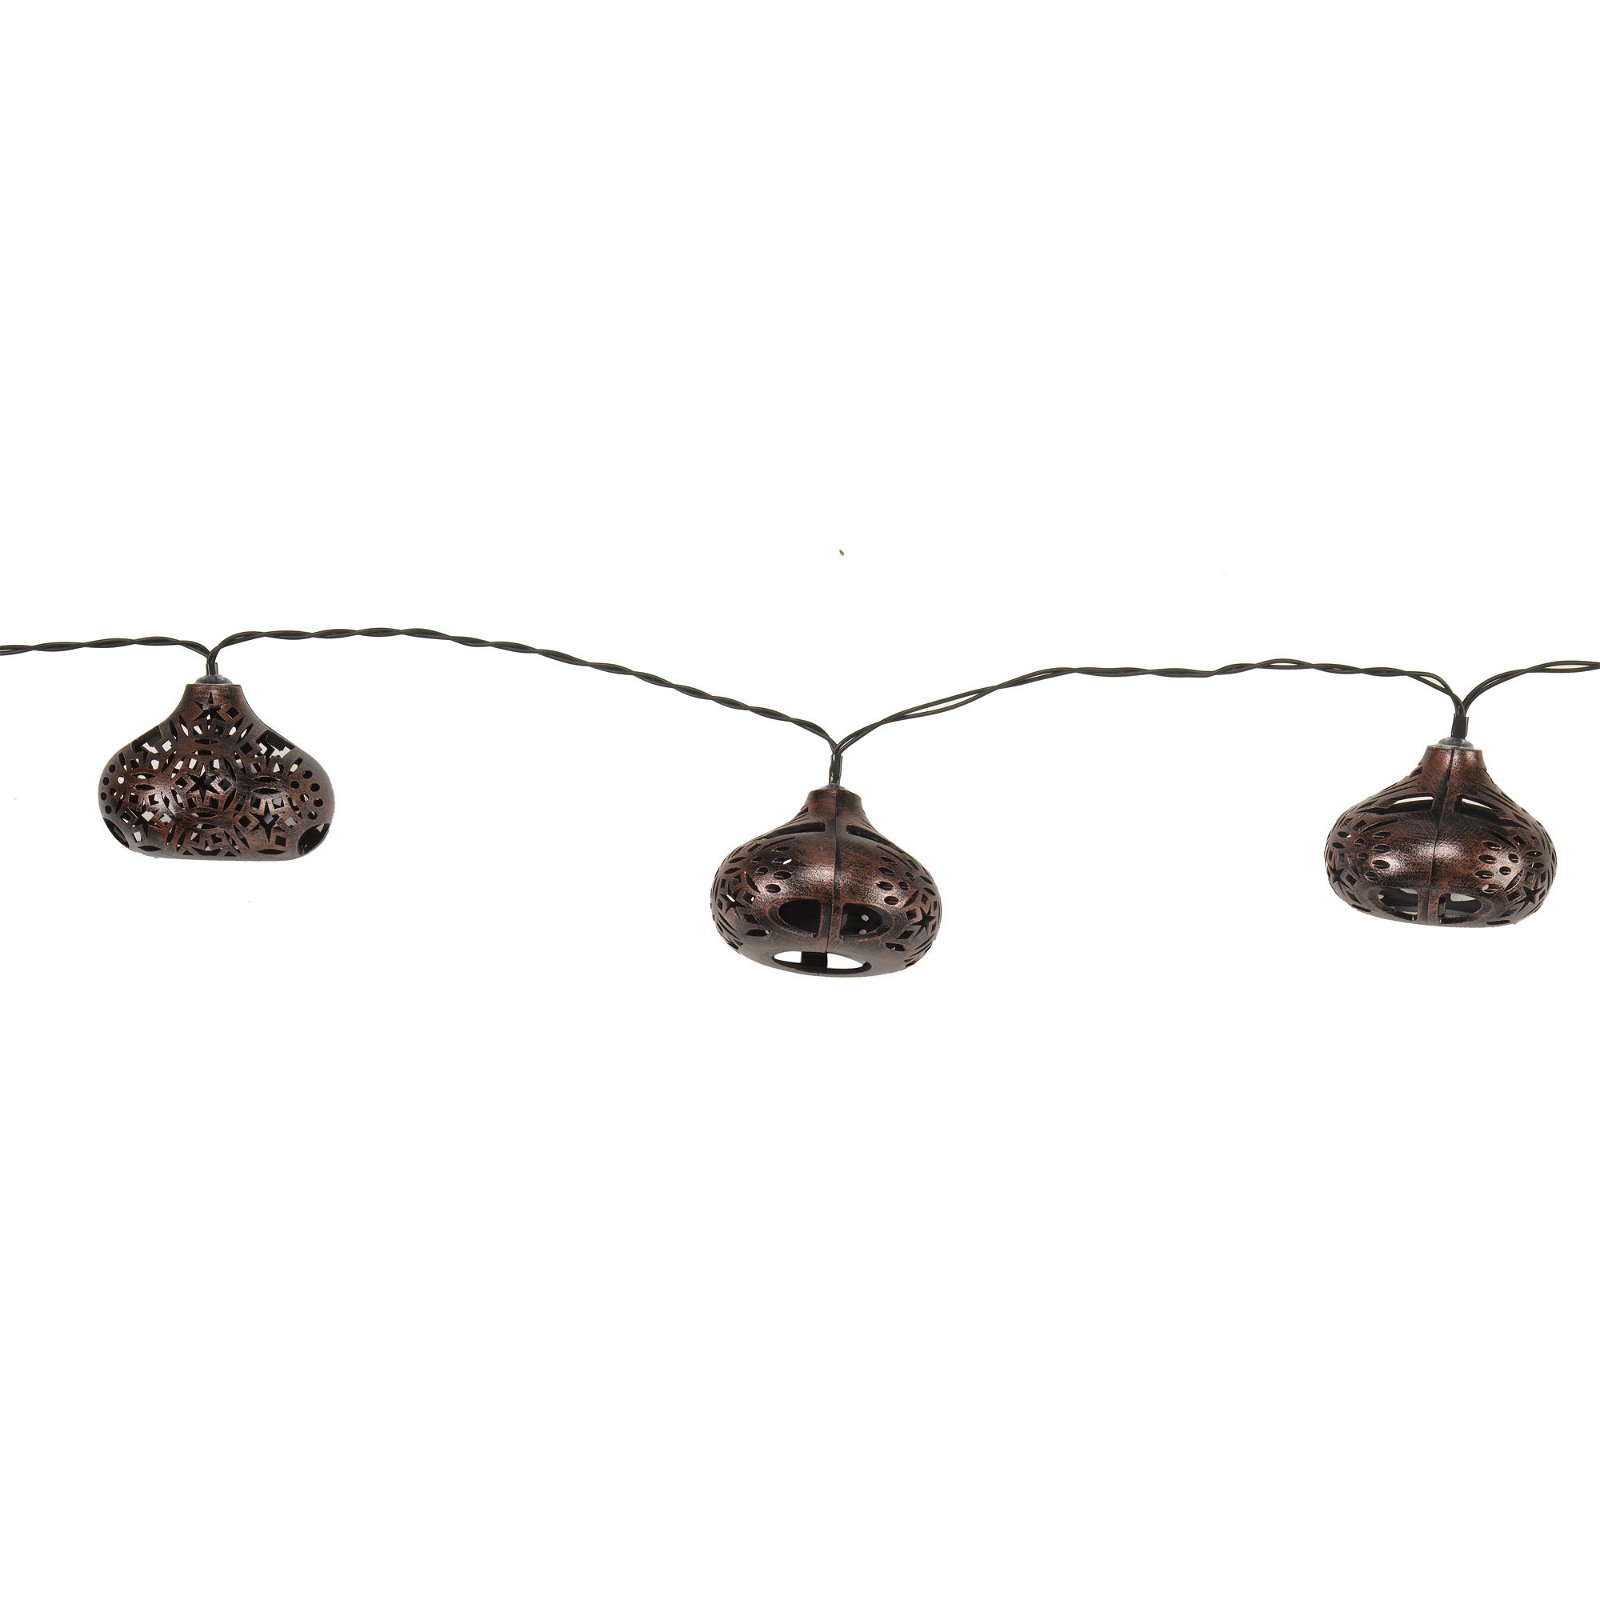 Marokkanische Lichterkette, bronze, Länge 470 cm